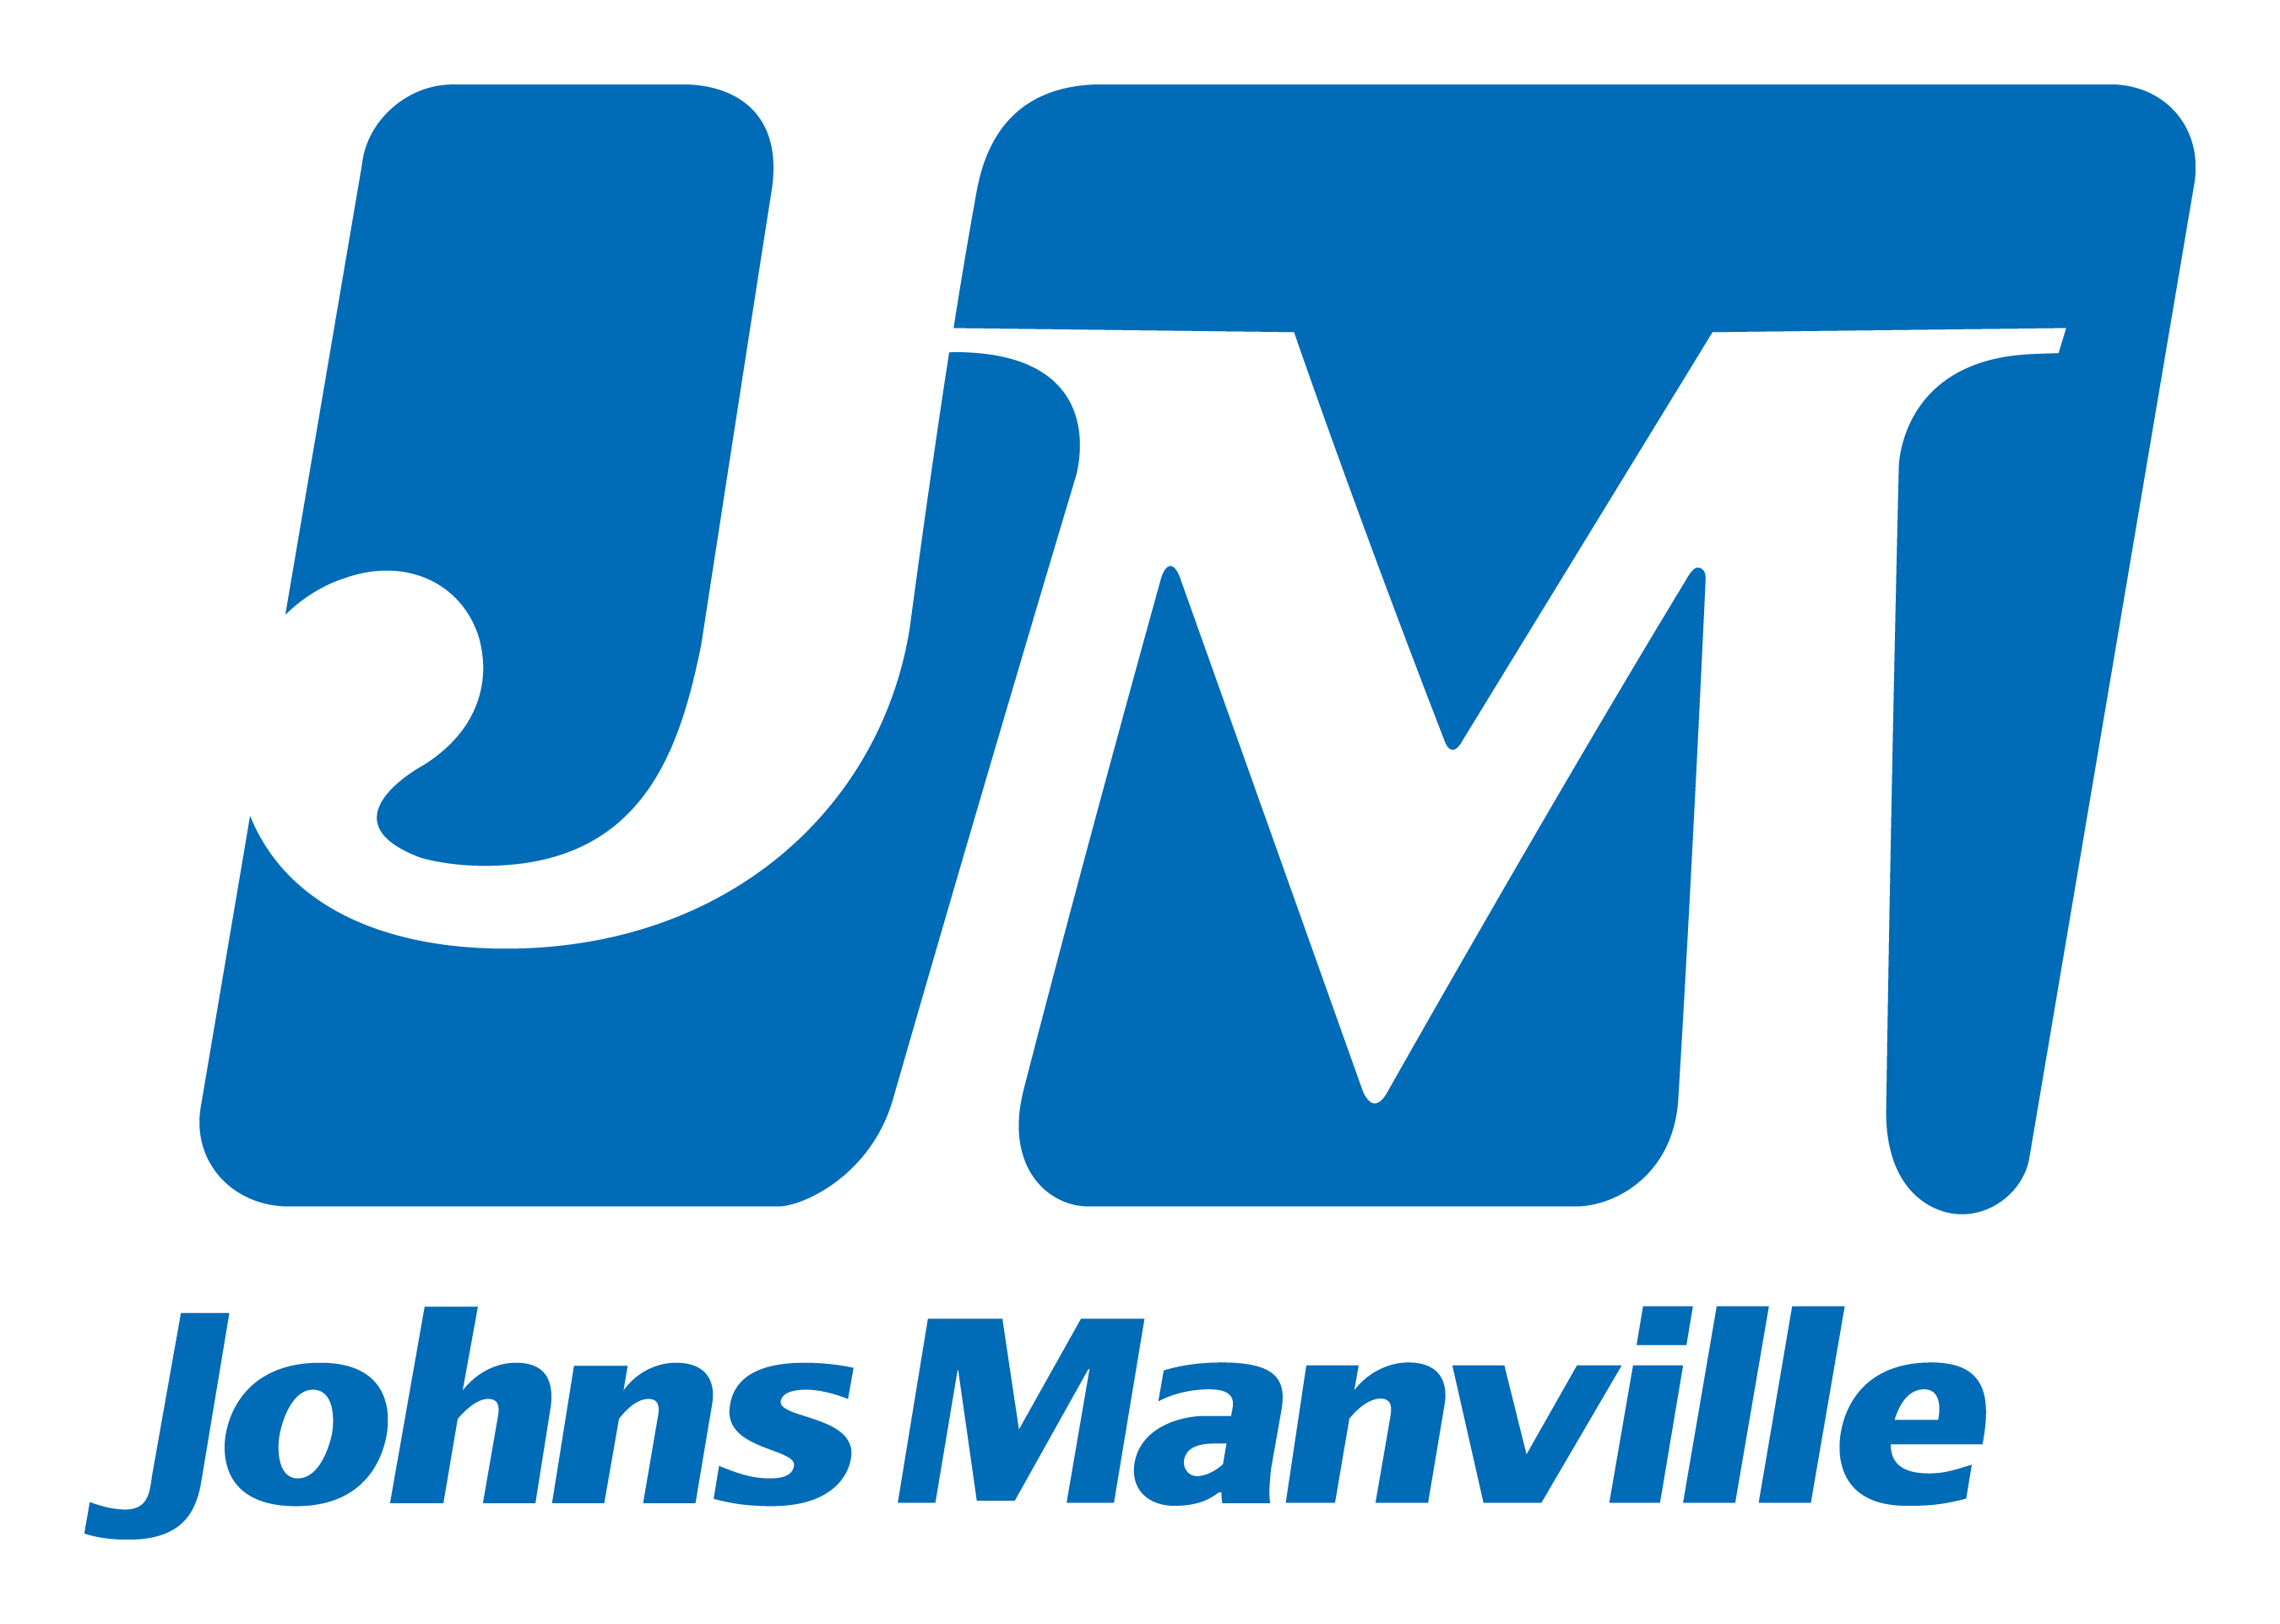 johns-manville-logo